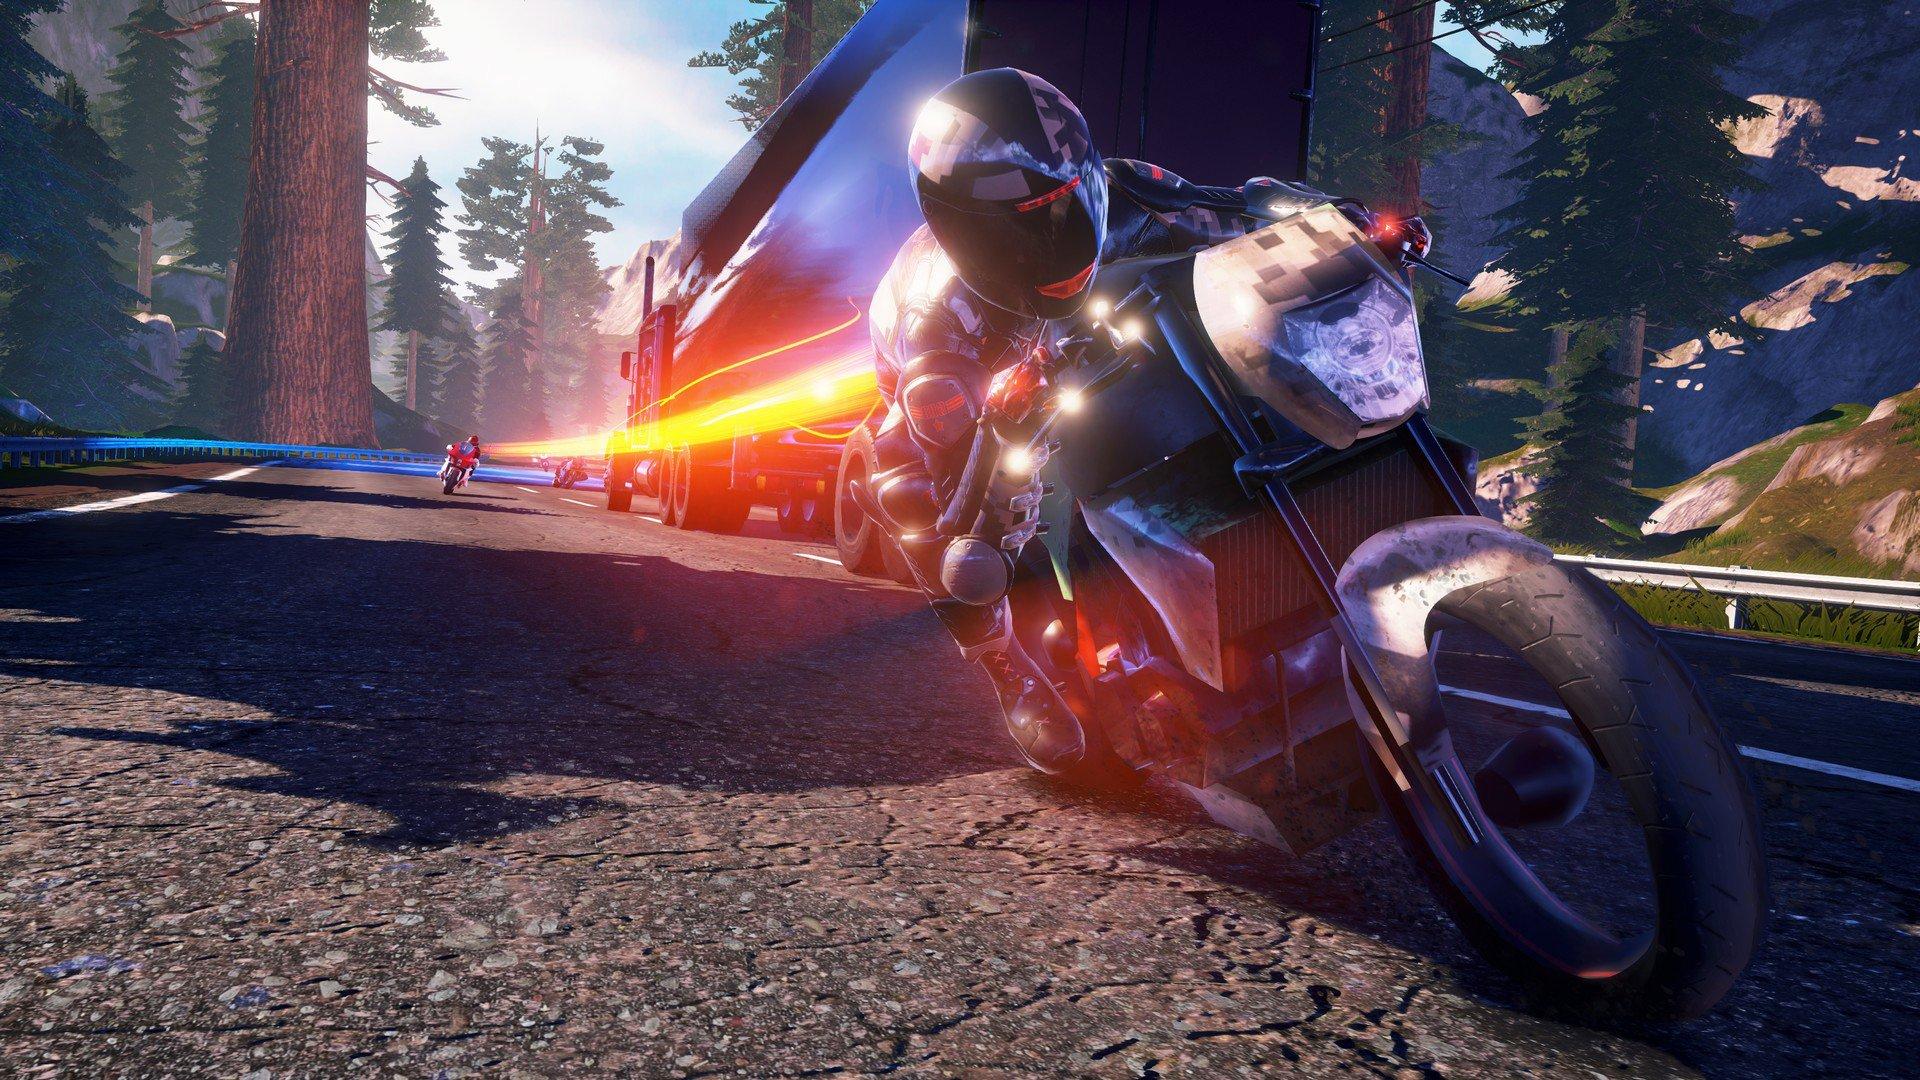 Jogo PS4 Moto Racer 4